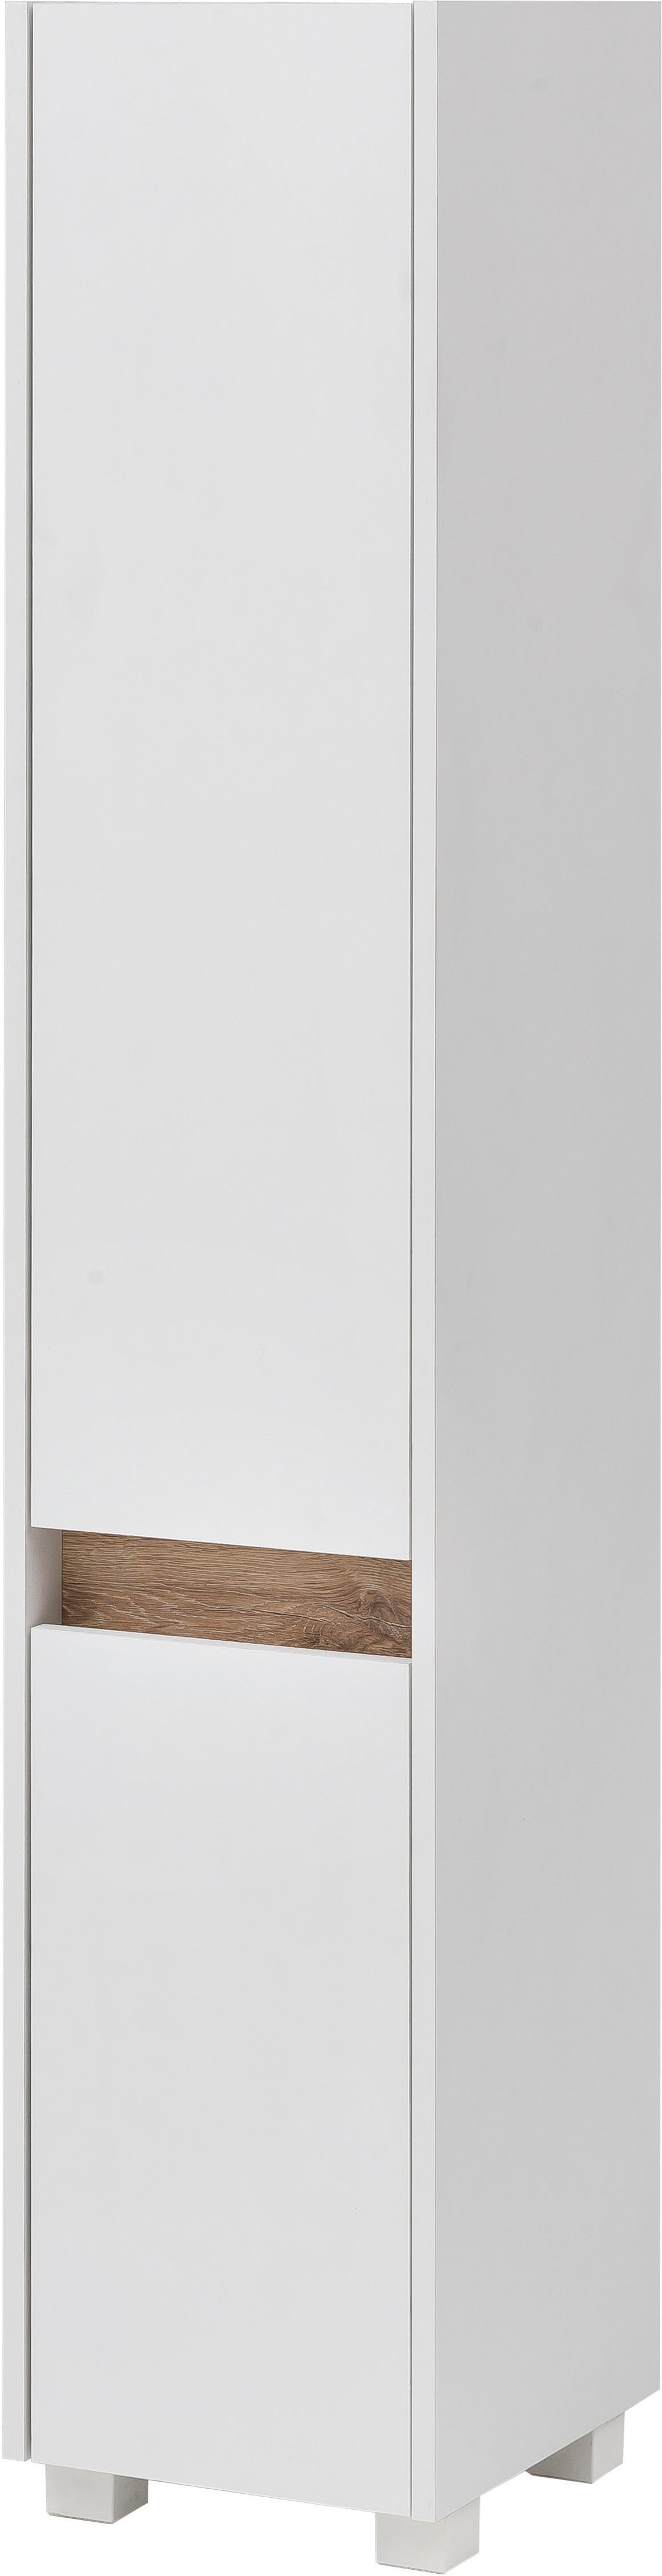 Schildmeyer Hoge kast Cosmo Hoogte 164,5 cm, badkamerkast in greeploze look, rand in moderne wildeiken-look, aan te passen draairichting